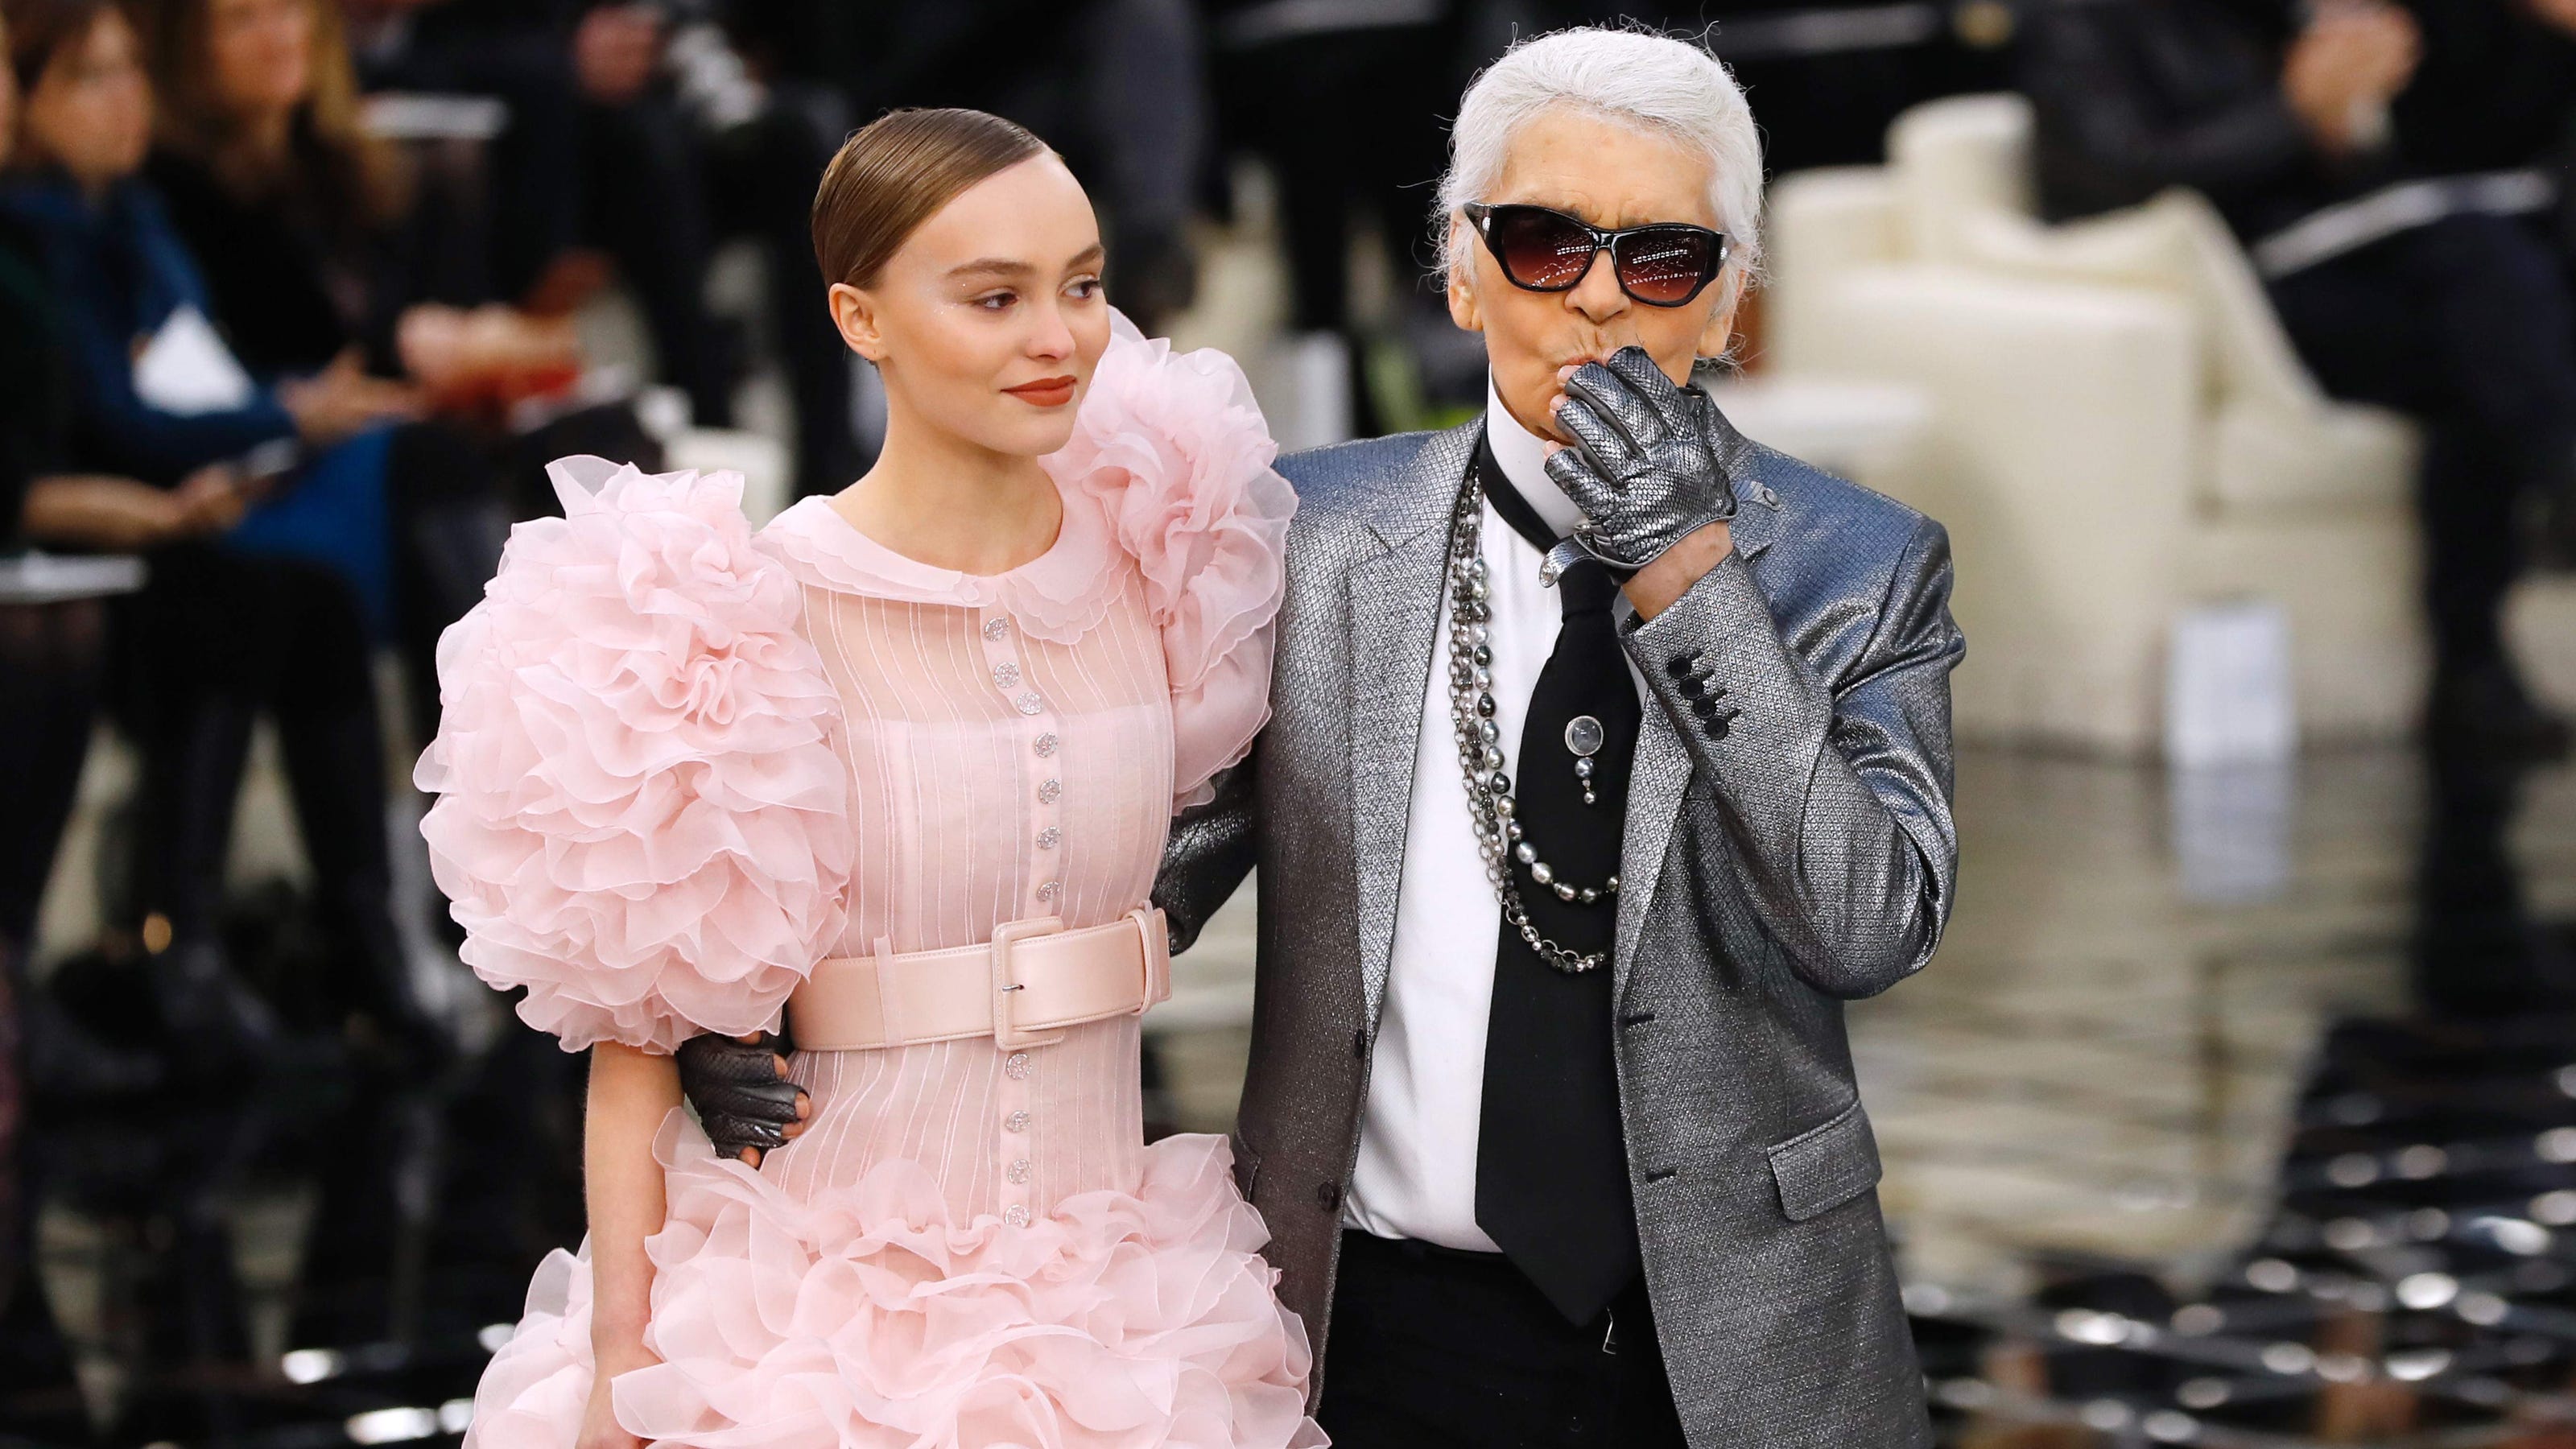 zeemijl Brein Er is een trend Karl Lagerfeld, Chanel creative director, dead